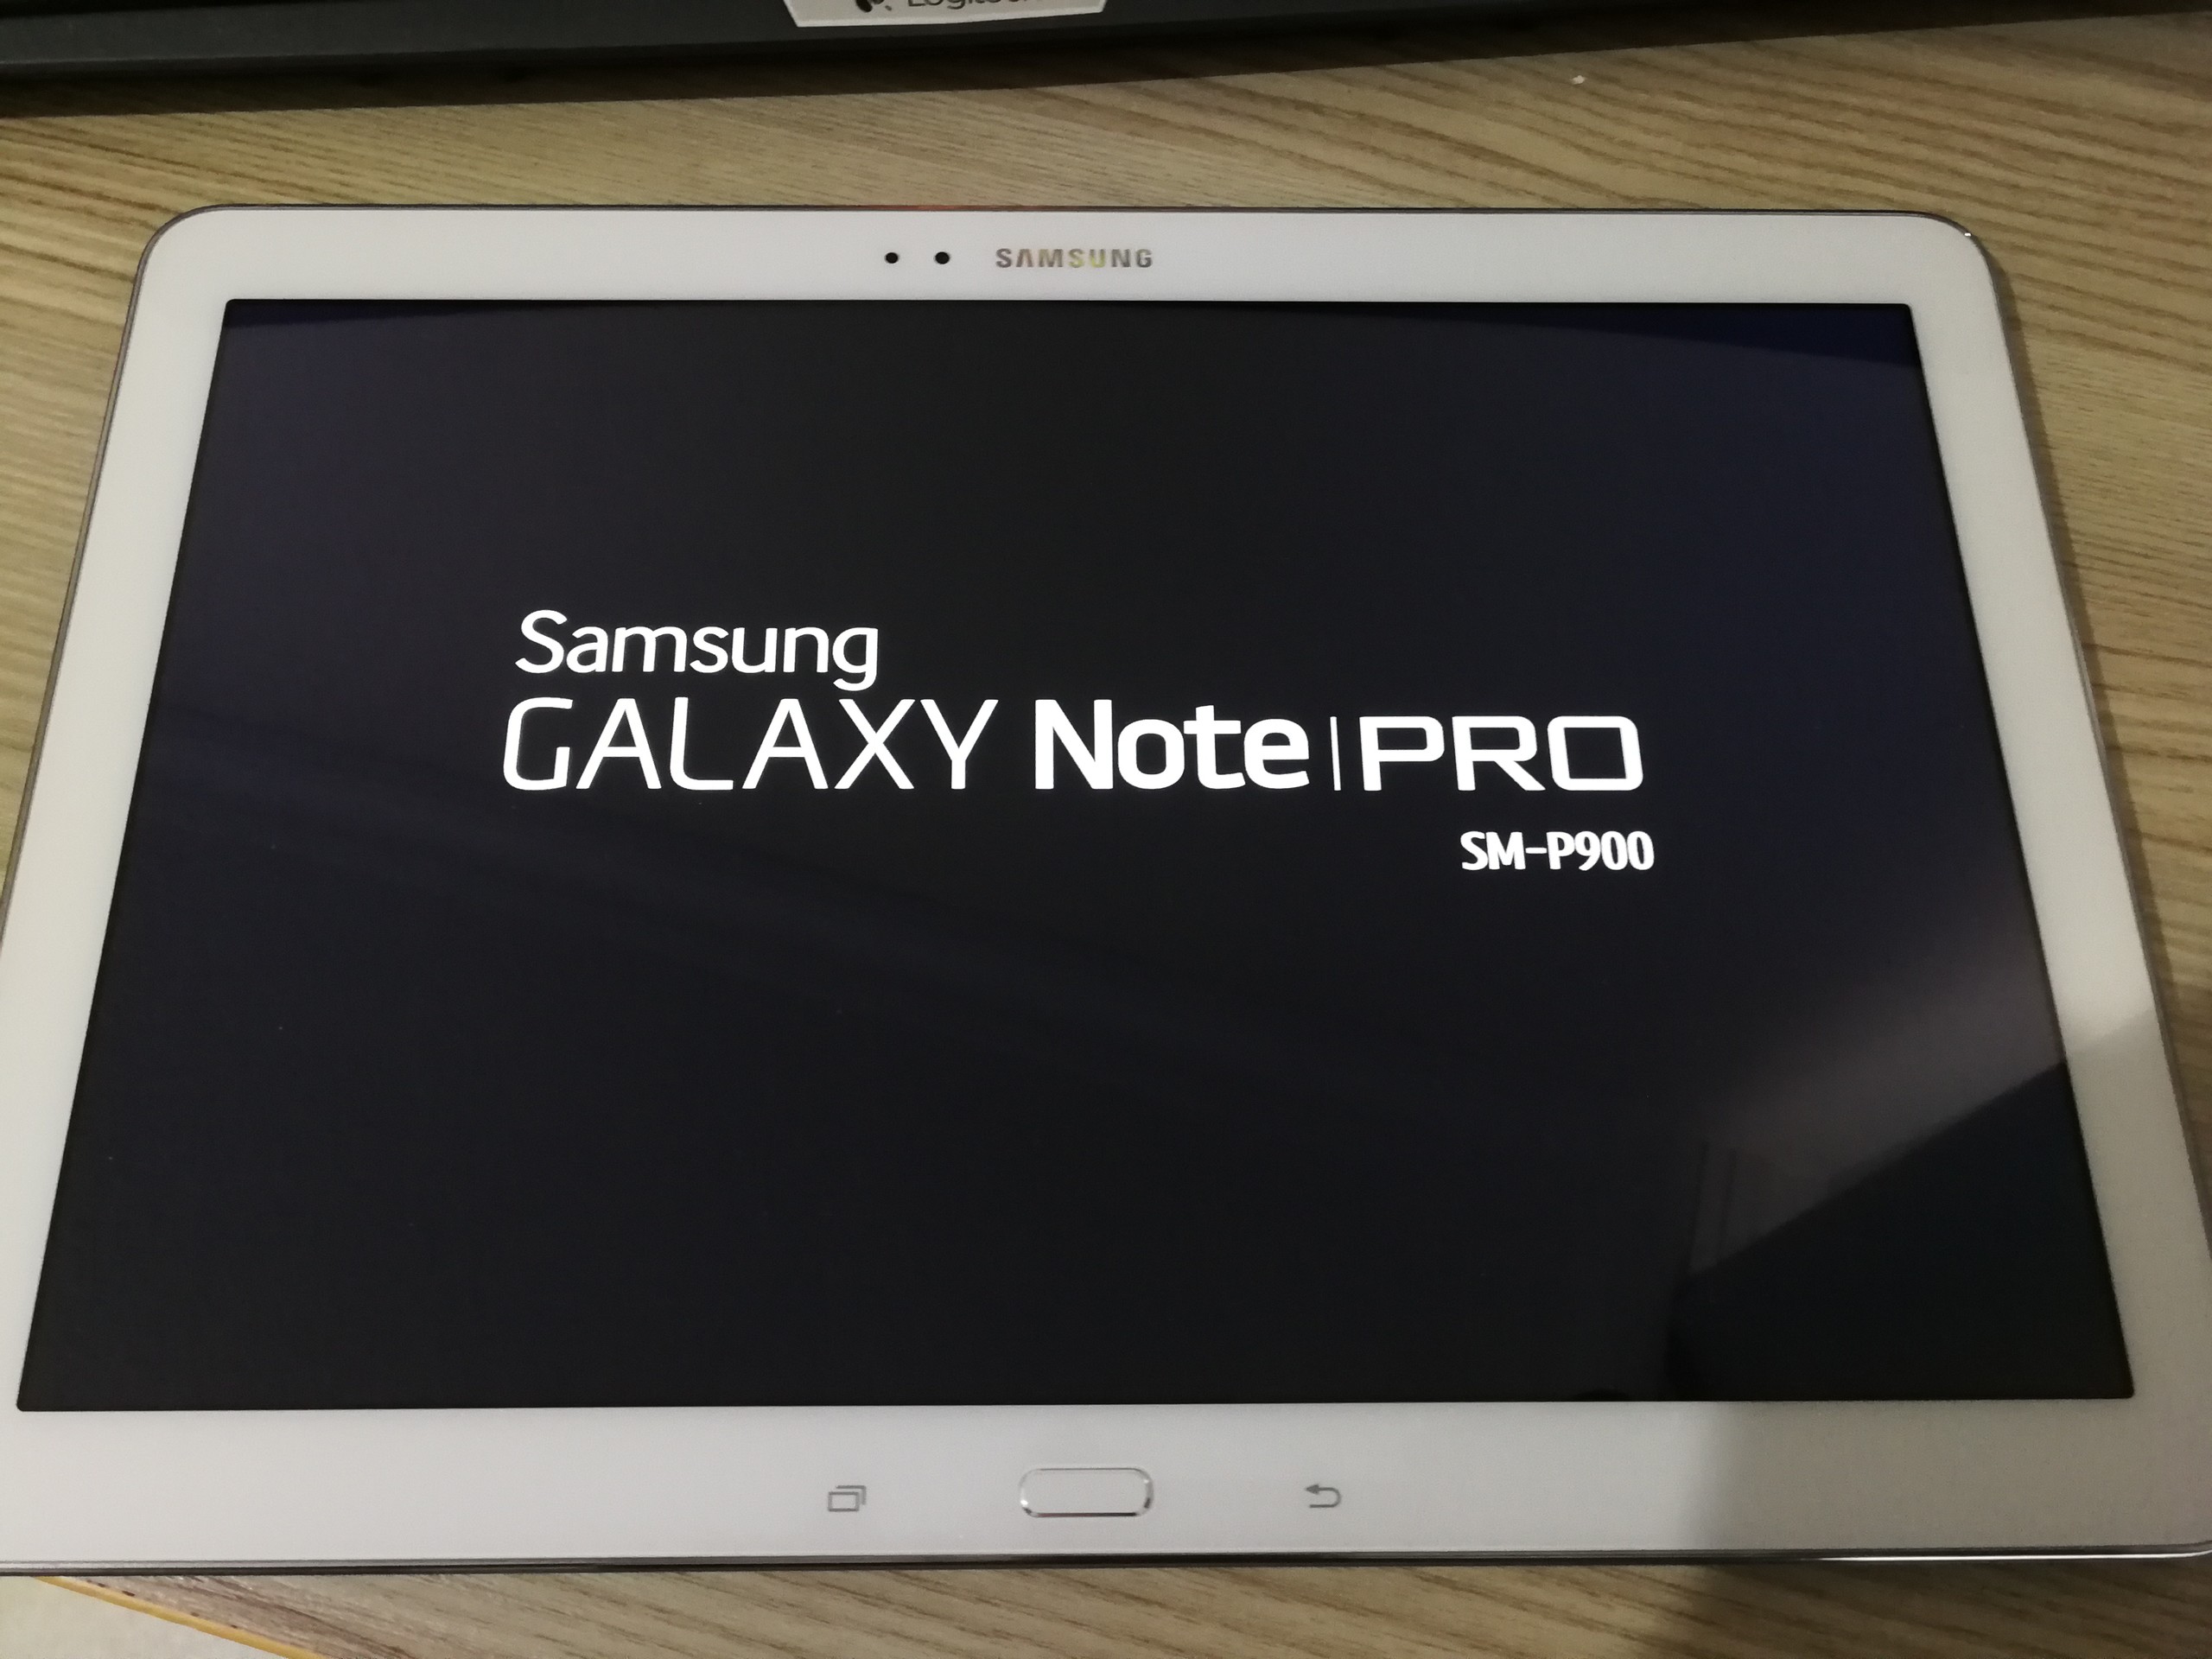 Note 12 speed. Samsung Galaxy Note Pro 12. Samsung Galaxy Note Pro 12.2. Samsung Galaxy Note p900. Samsung Galaxy Note 12.2 SM p900.